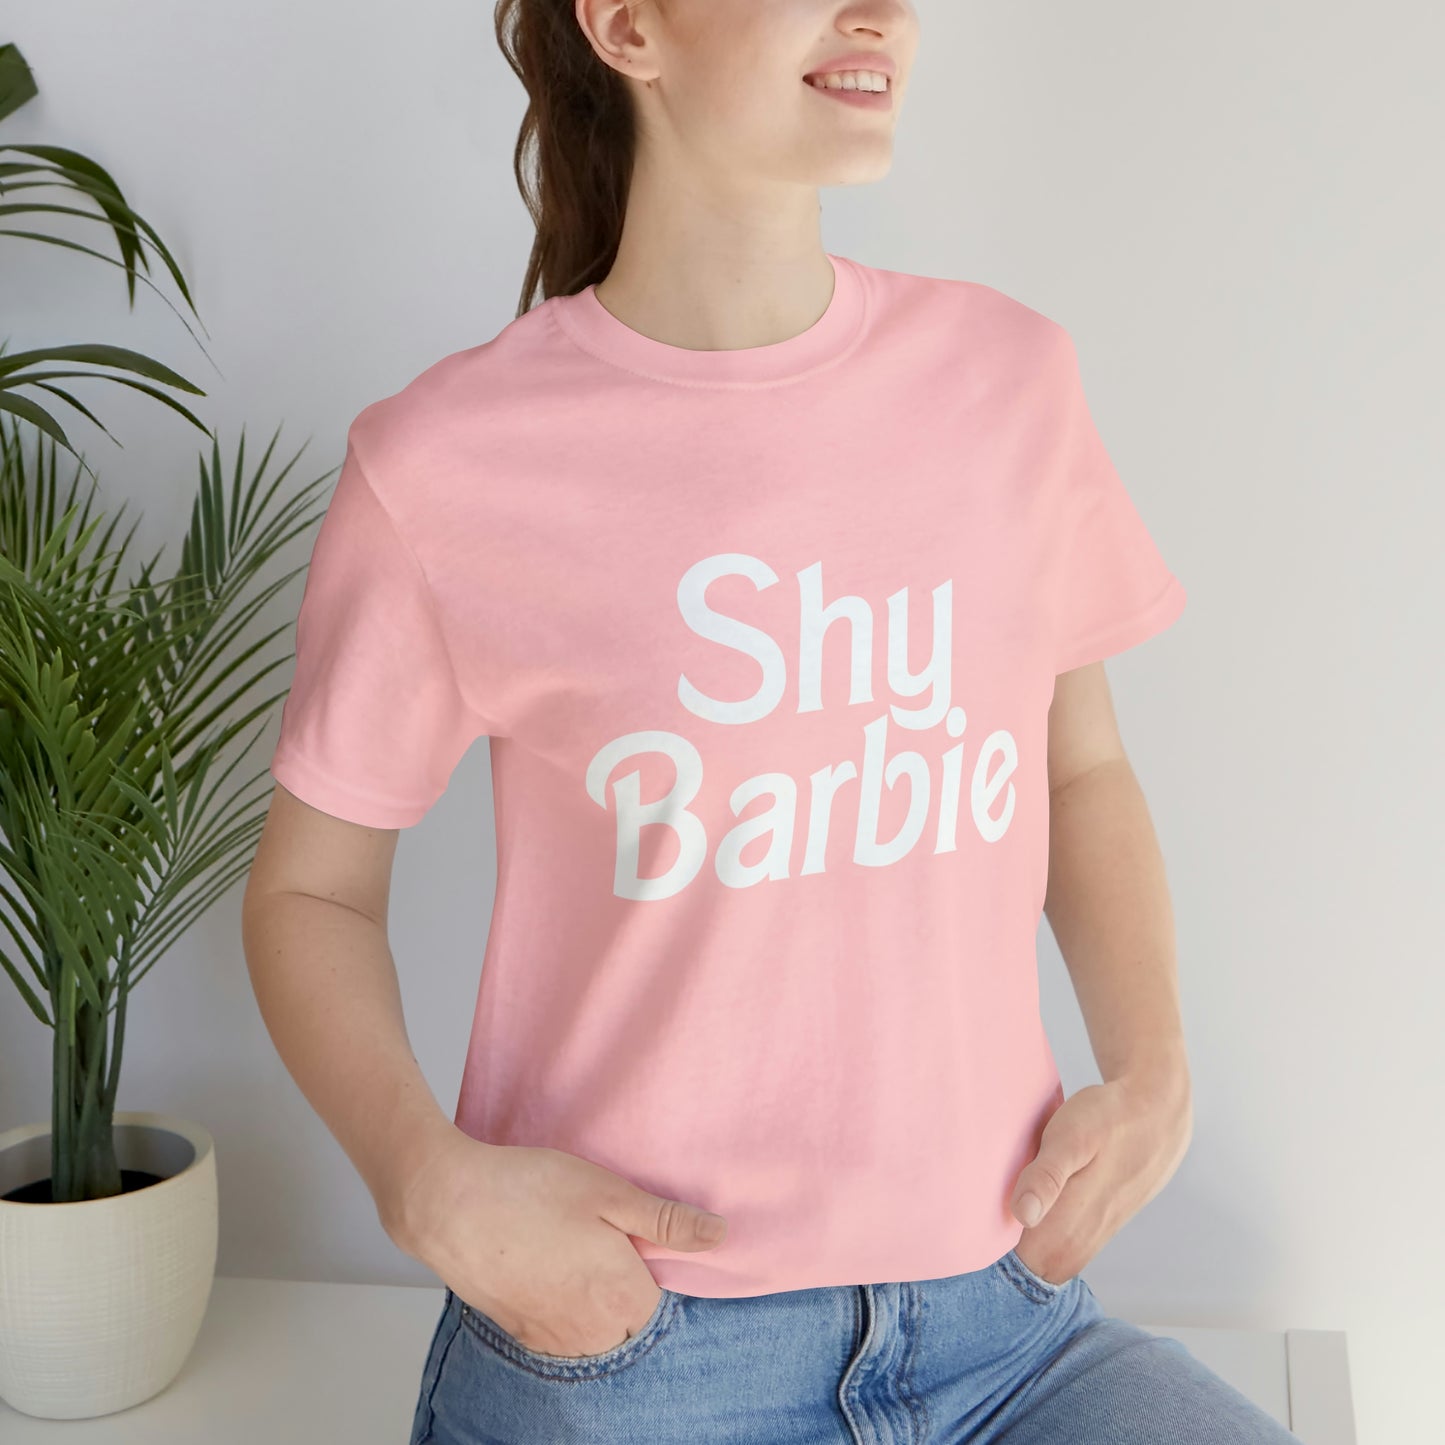 Shy Barbie